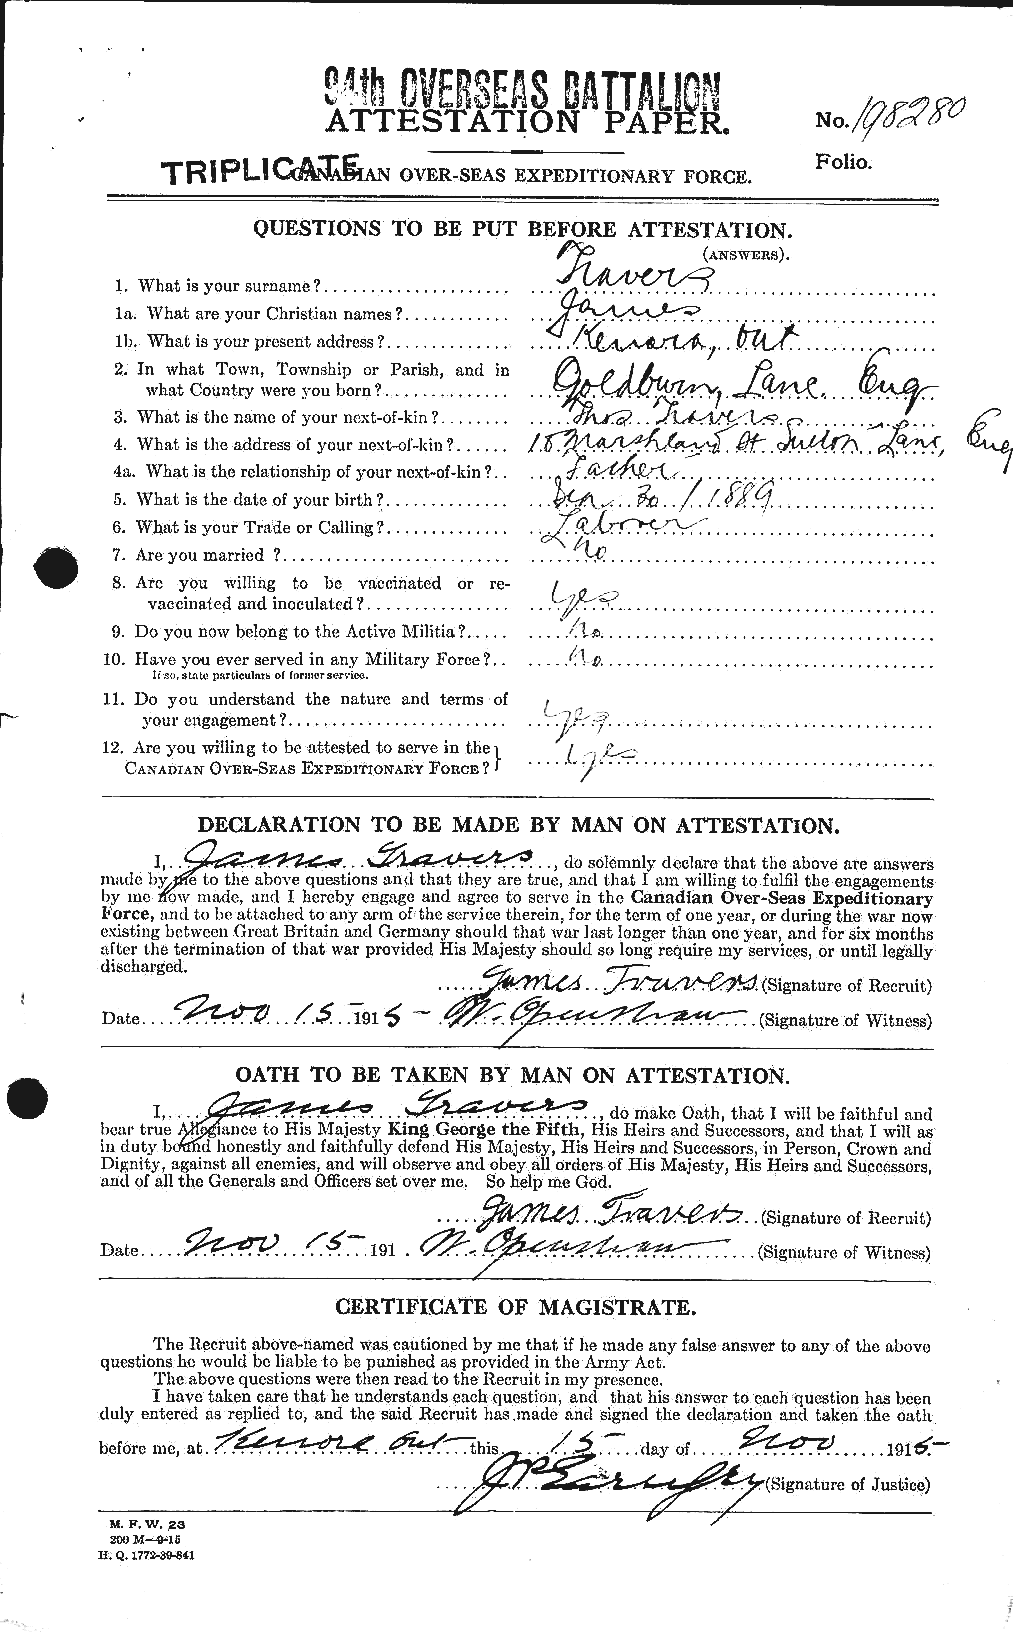 Dossiers du Personnel de la Première Guerre mondiale - CEC 638708a